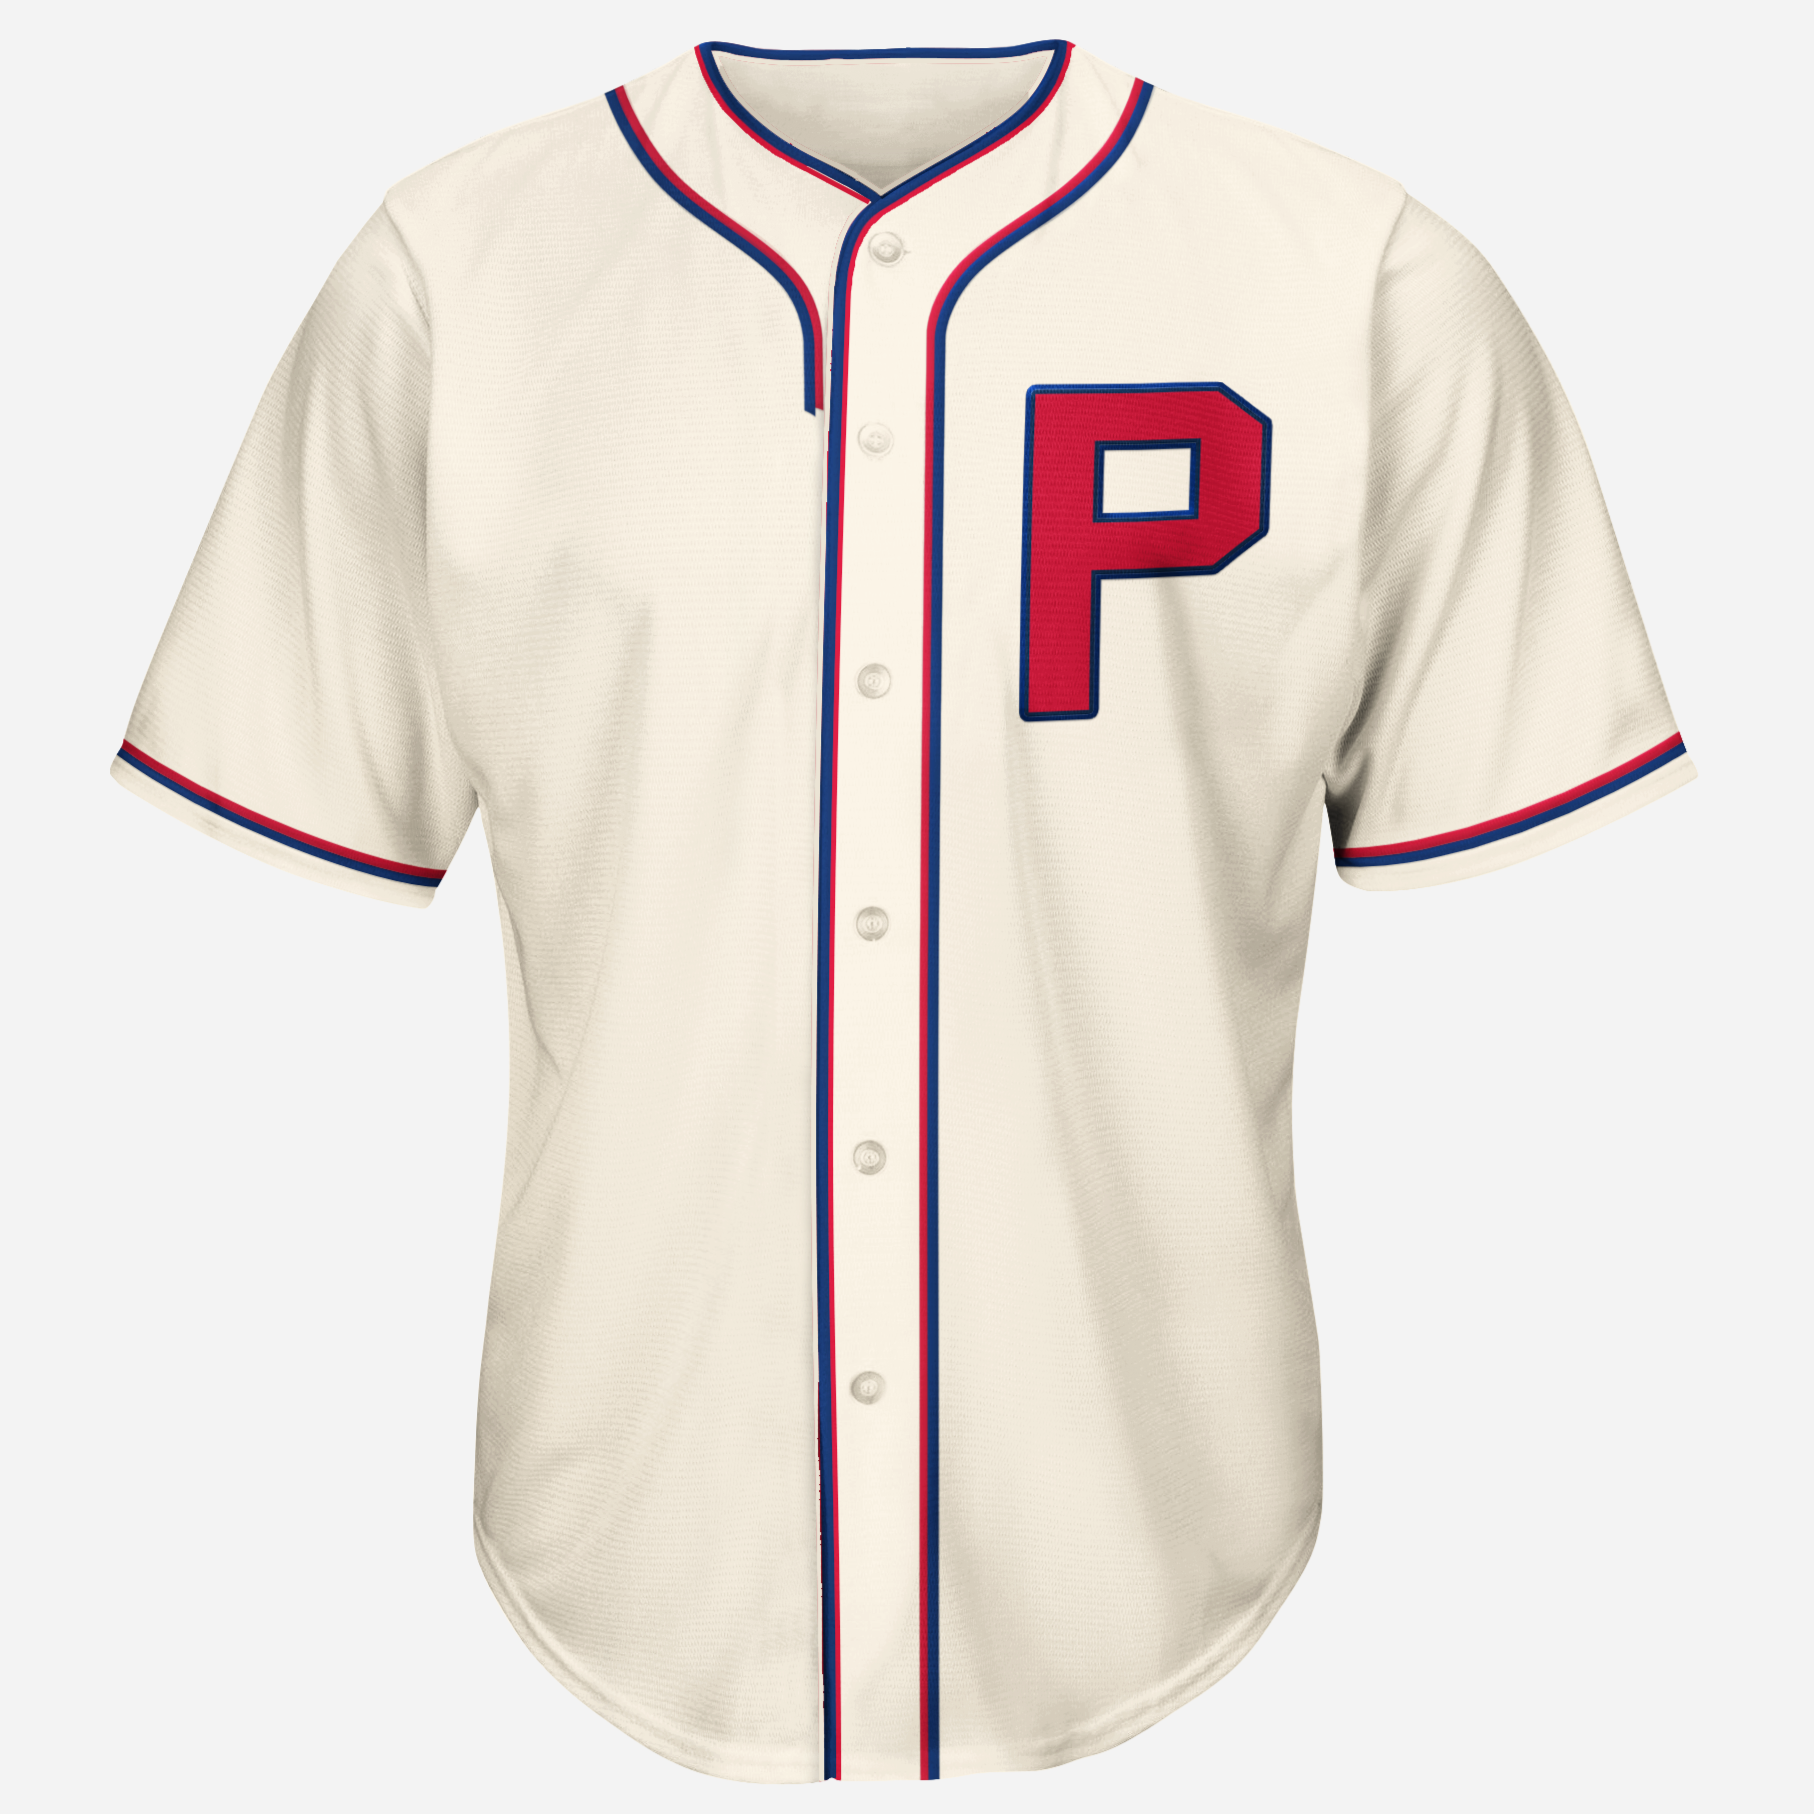 1939 philadelphia phillies jersey